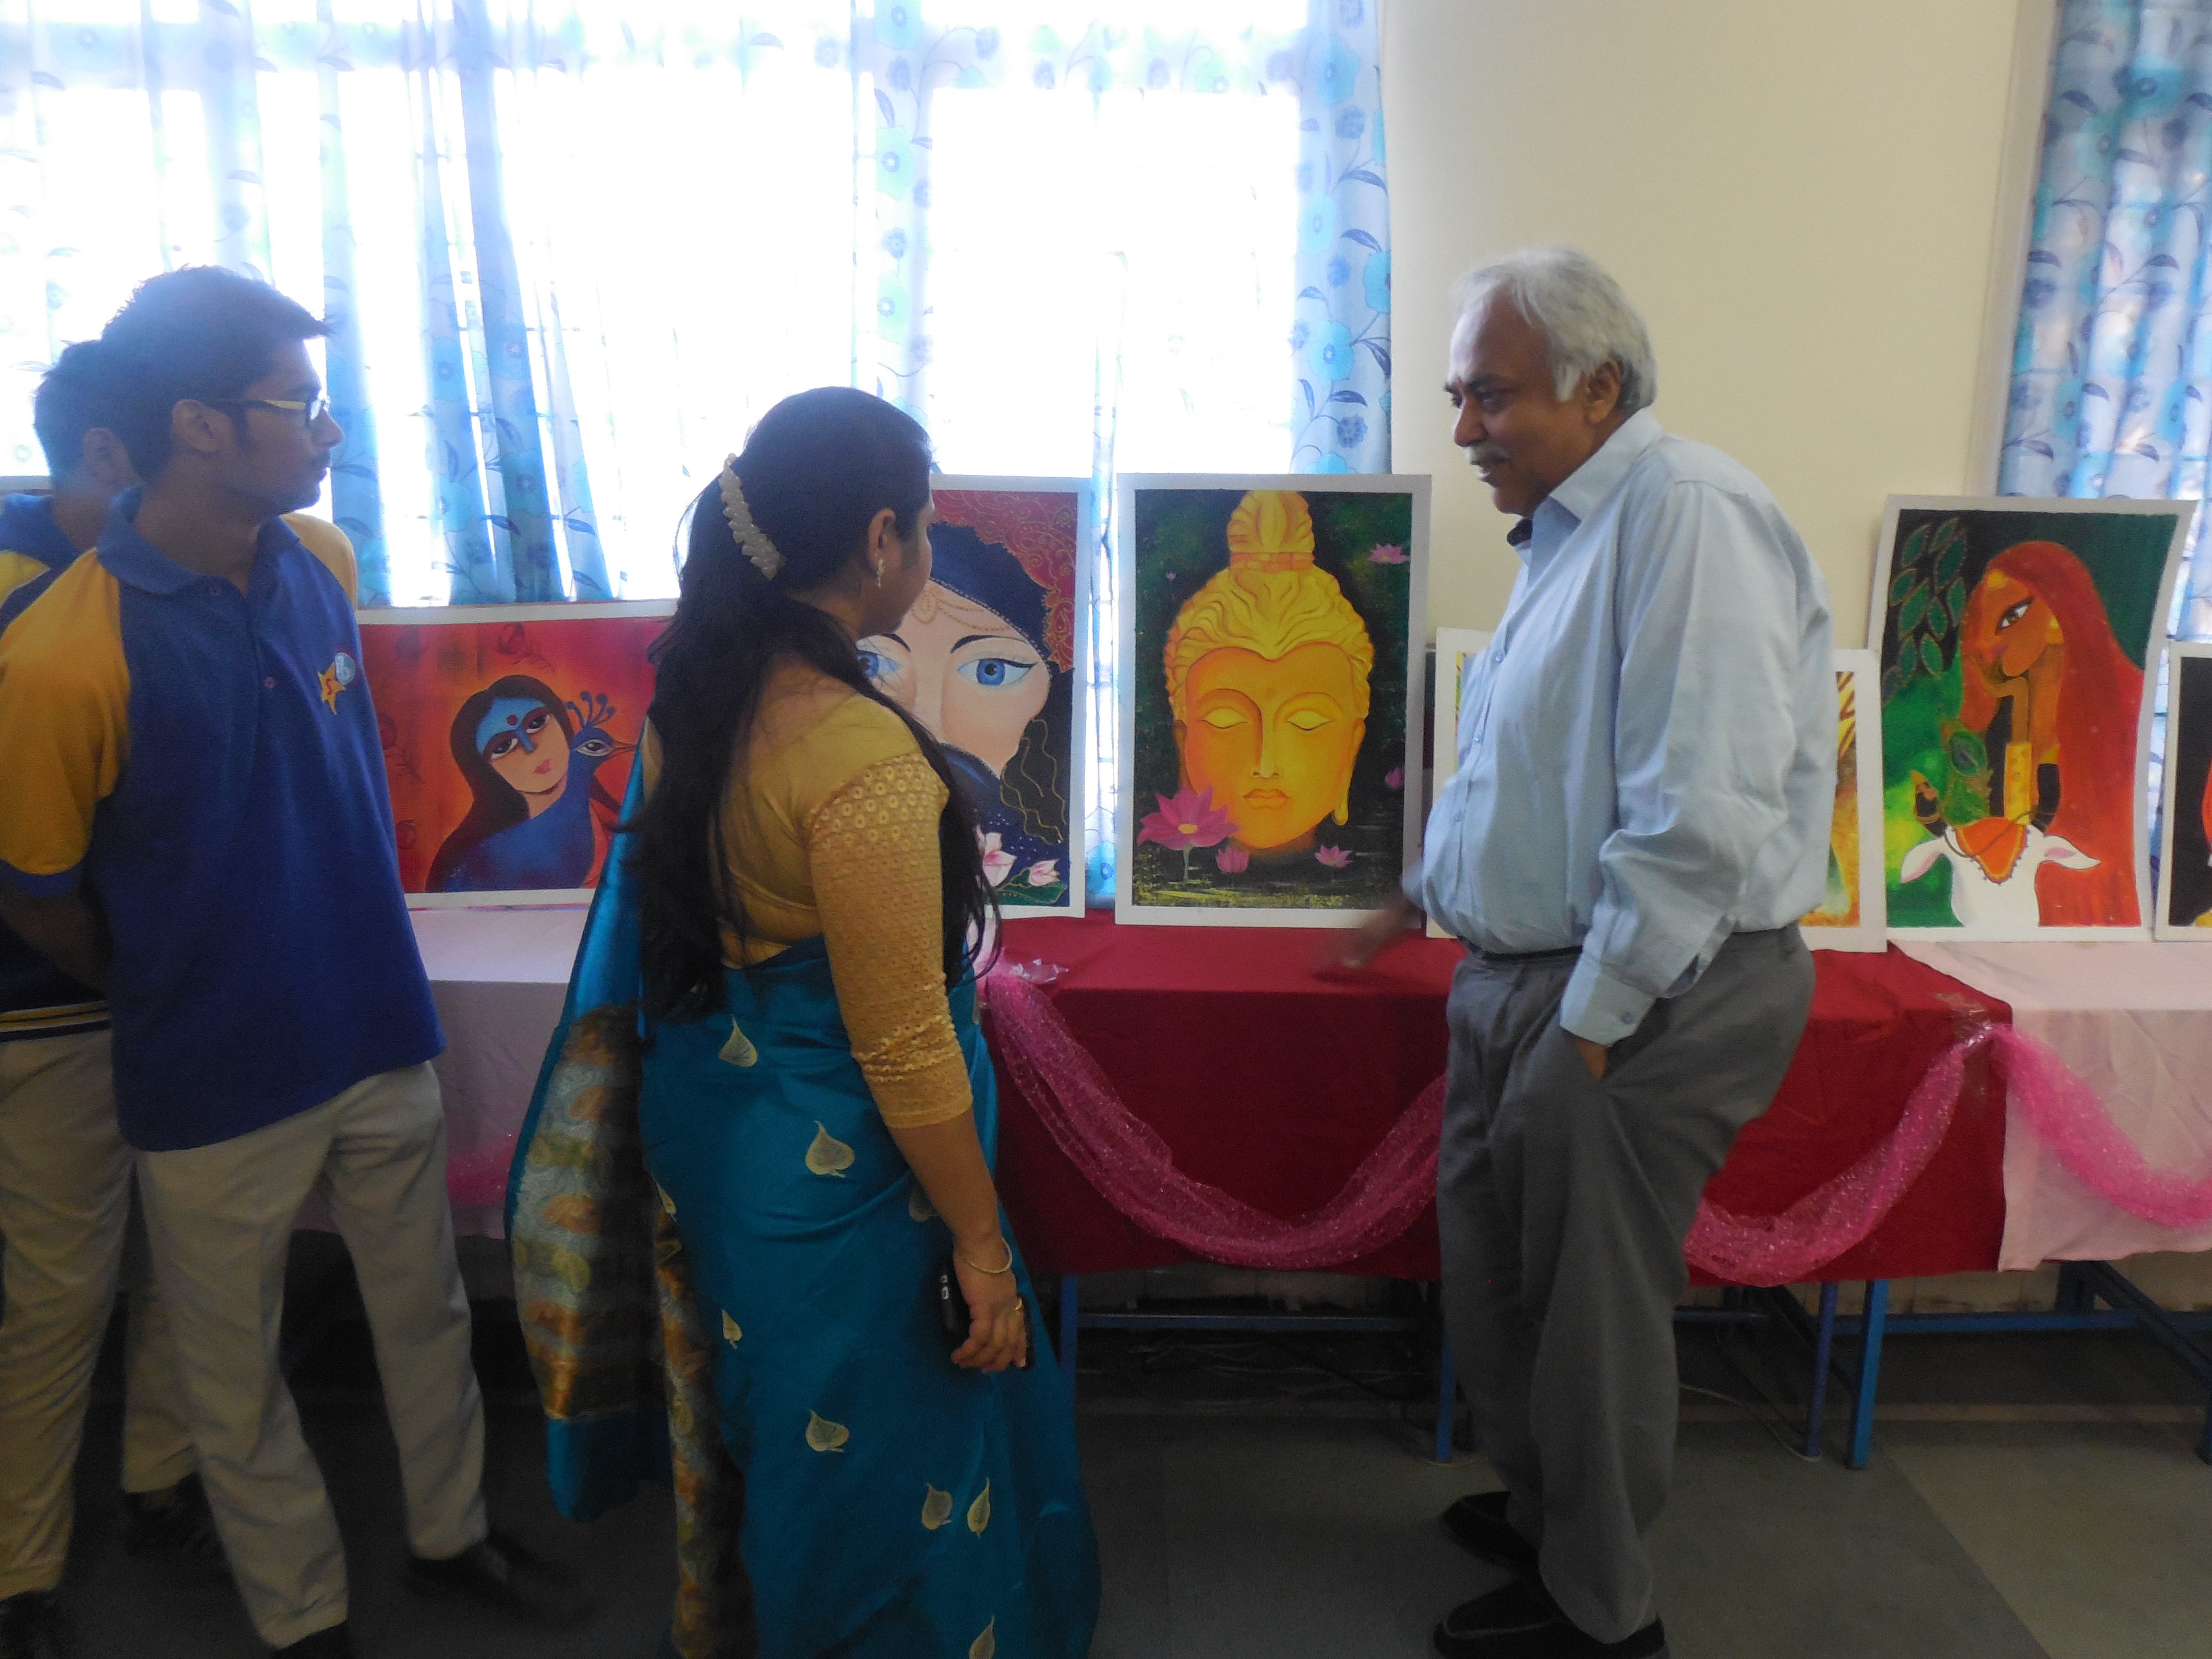 Organ Donation Poster Exhibition held at Sanskar School